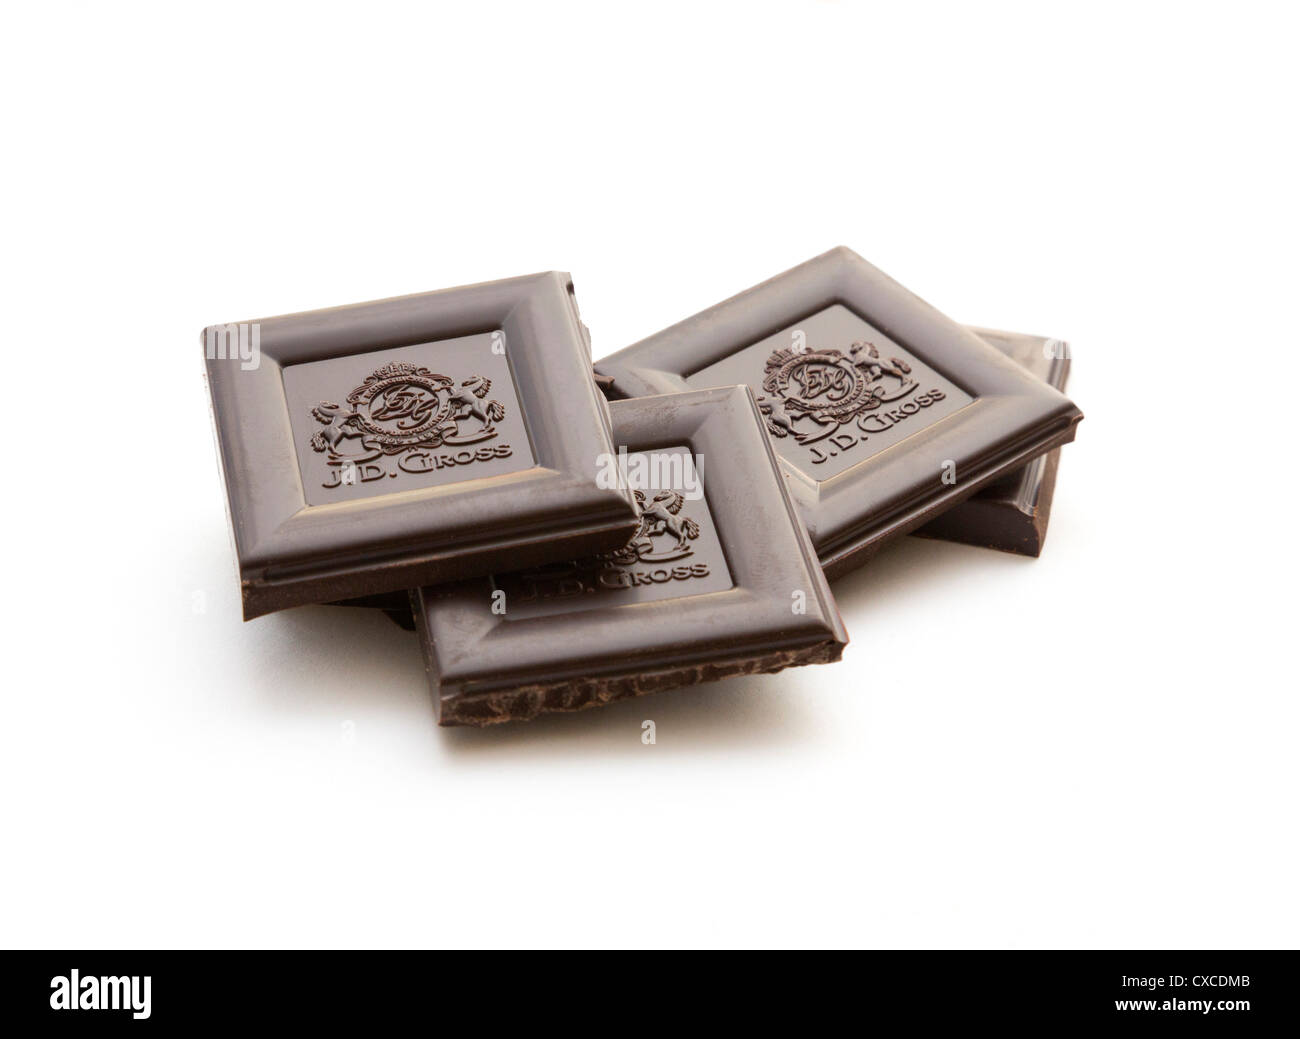 dunkle Schokolade gemacht durch J D Brutto / Rausch Schokolade von Lidl verkauft Stockfoto